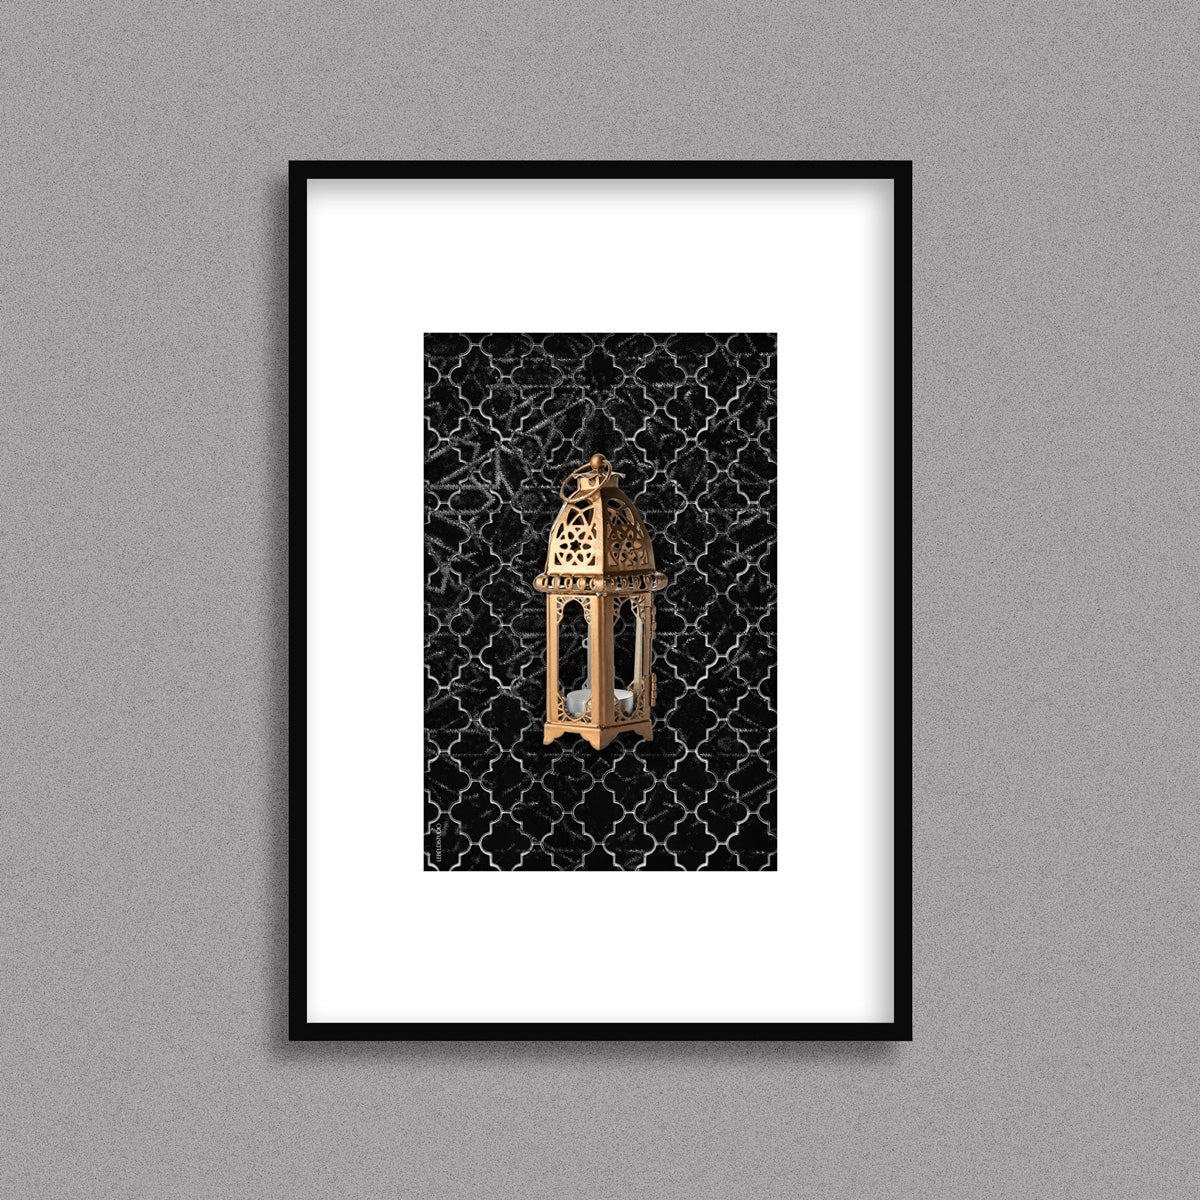 Tableau décoratif  d'une lanterne traditionnelle marocaine en dorée sur un fond de zellige marocain noir, encadré dans un cadre en noir - Format A4.